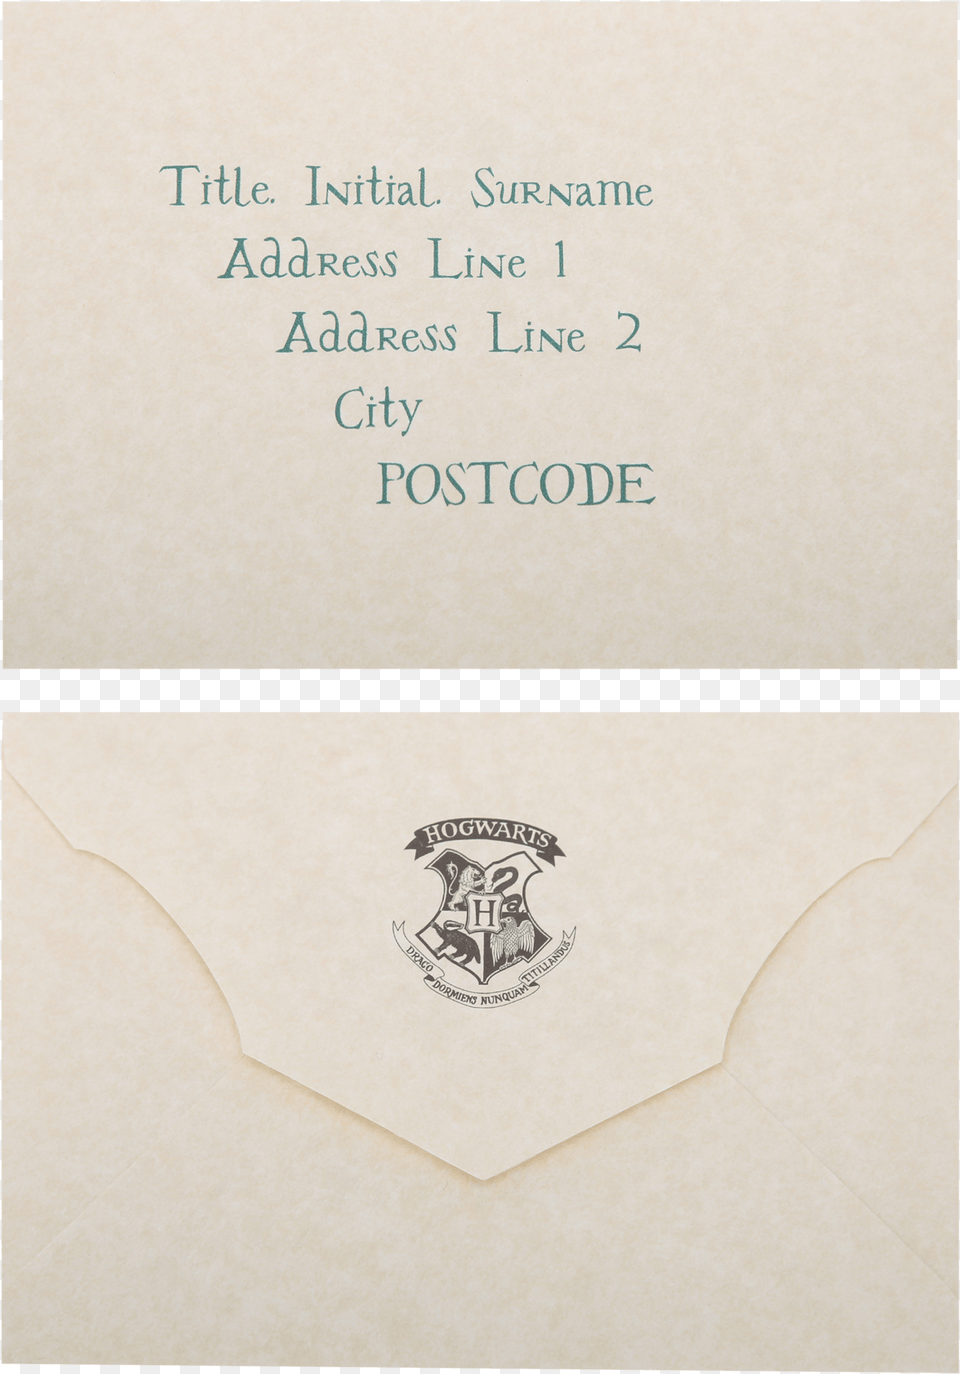 Harry Potter Hogwarts Crest Tote Bag, Envelope, Mail Free Transparent Png